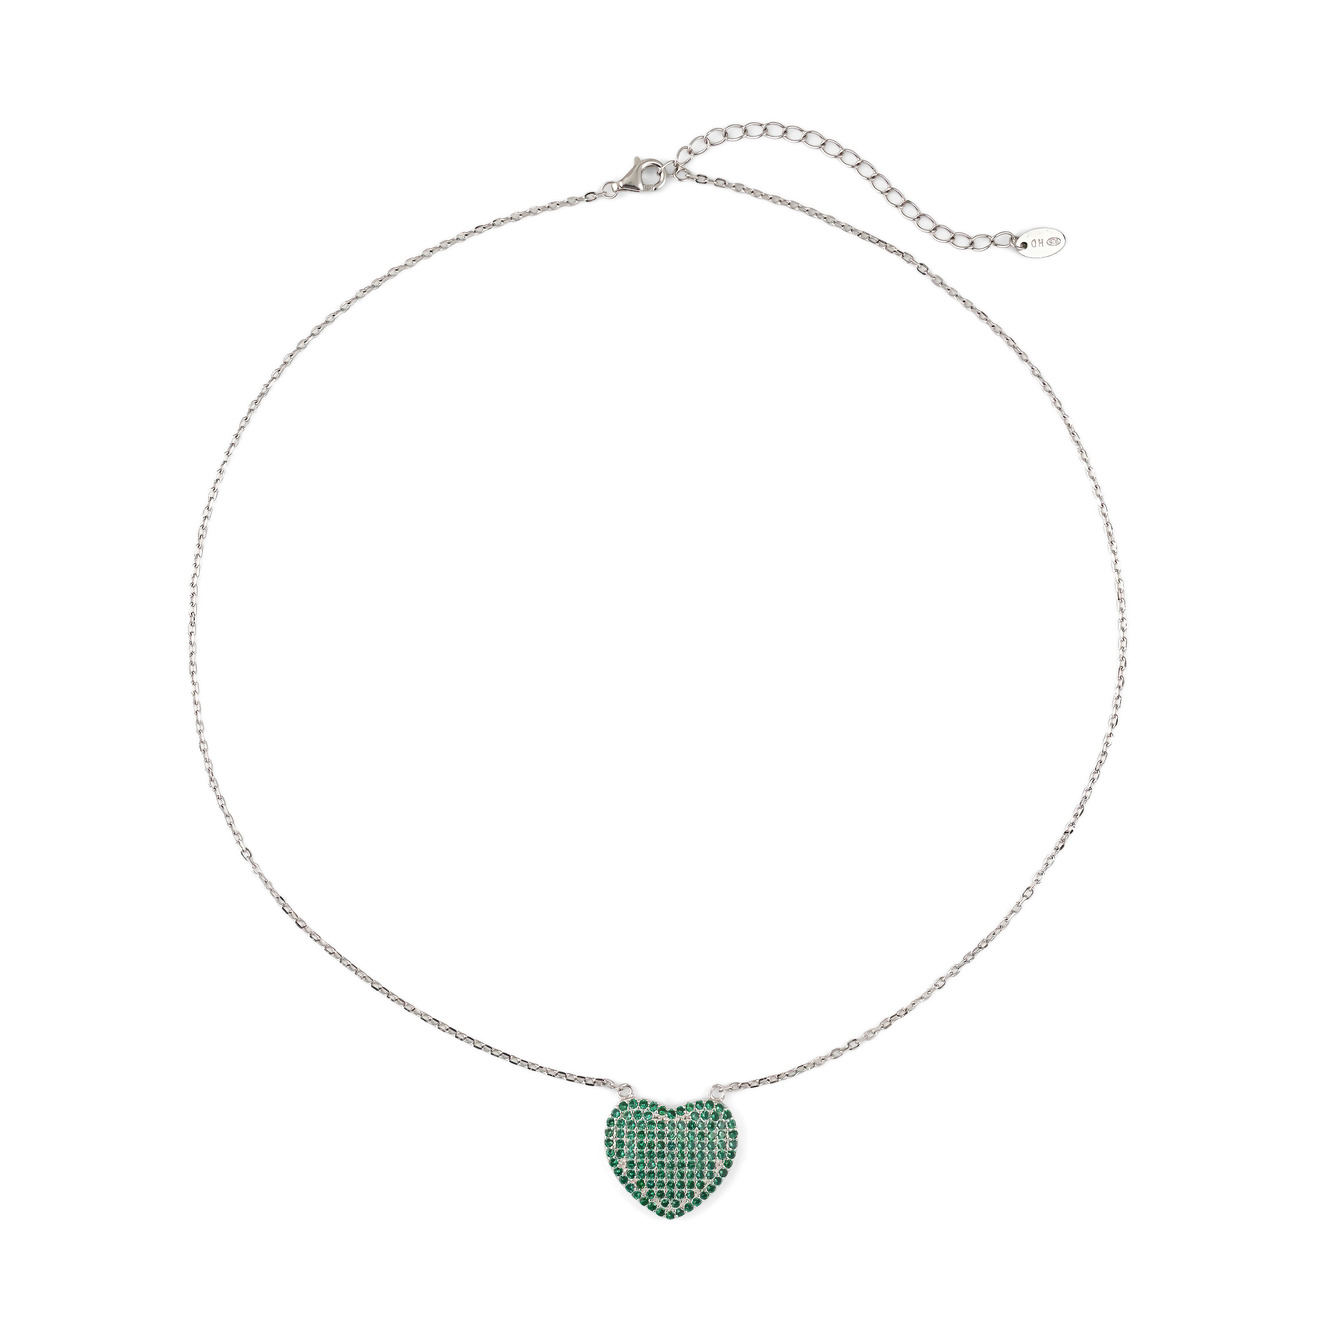 SKYE Колье-цепь из серебра с крупным сердцем из зеленых кристаллов цена и фото